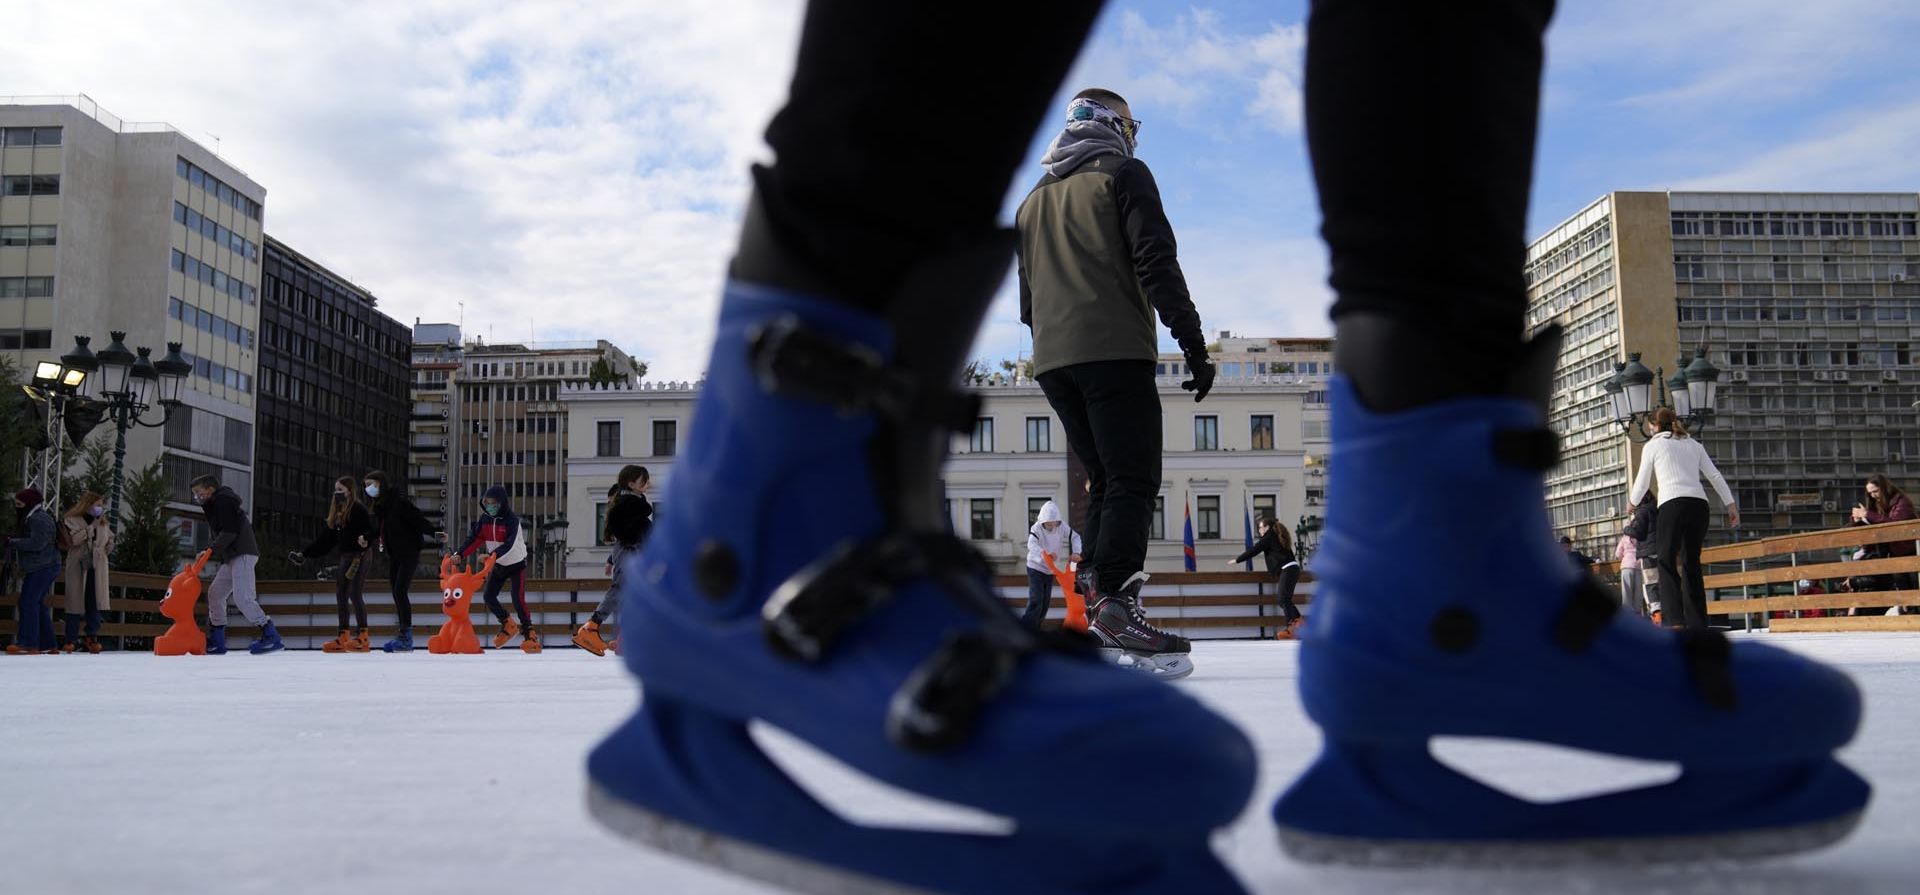 Personas patinan sobre hielo en una pista frente al Ayuntamiento de Atenas, Grecia, el jueves 23 de diciembre de 2021. Los conciertos de Navidad y otros eventos han sido cancelados en Grecia como parte de nuevas restricciones que incluyen la obligción de cubrebocas para lugares abiertos y todas las áreas públicas. Foto: AP